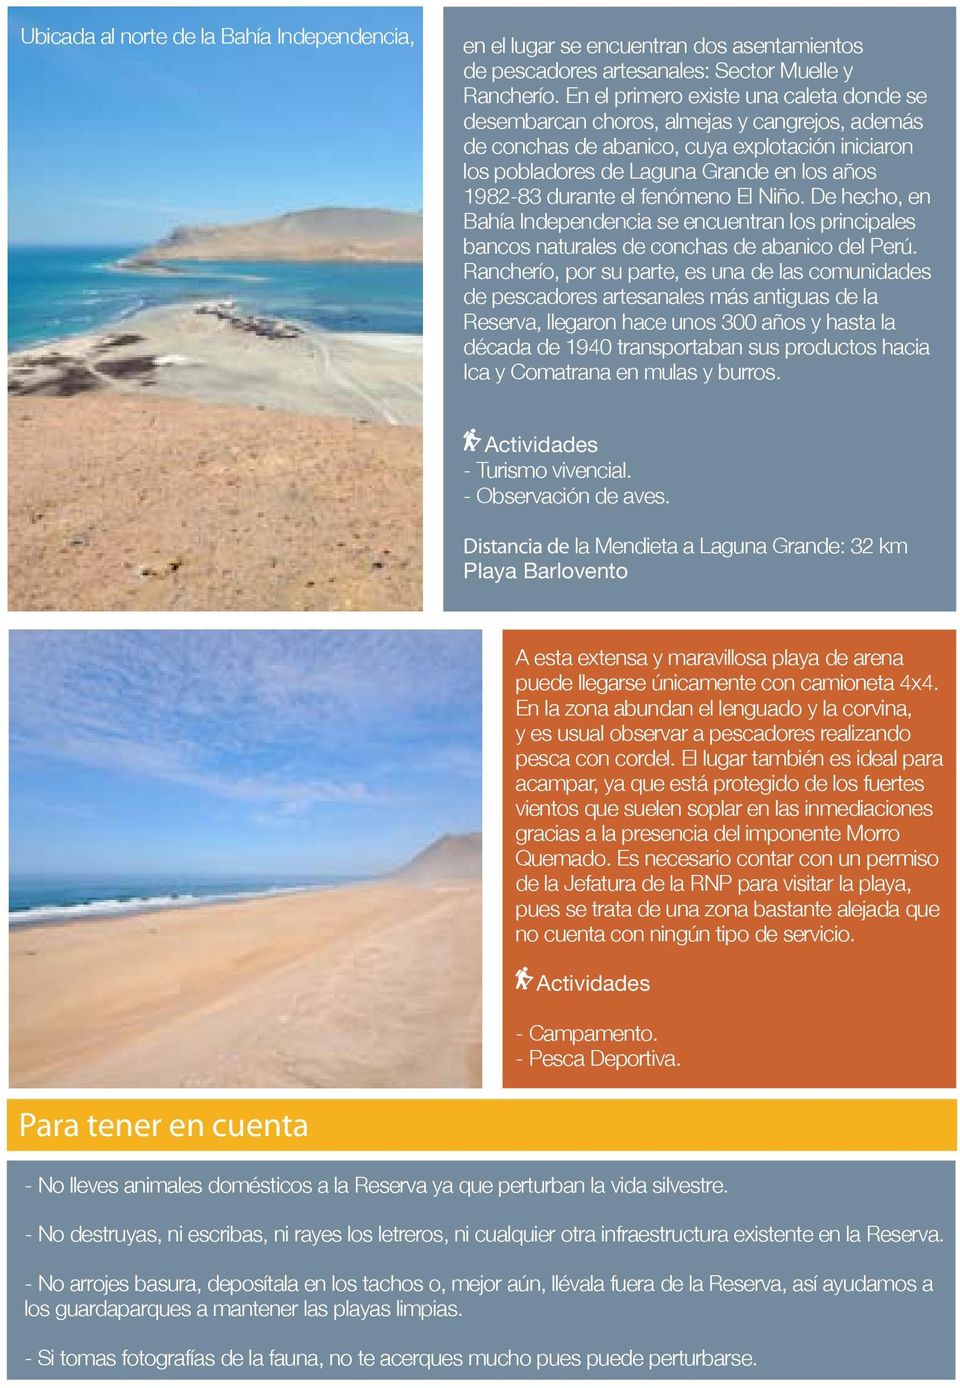 el fenómeno El Niño. De hecho, en Bahía Independencia se encuentran los principales bancos naturales de conchas de abanico del Perú.